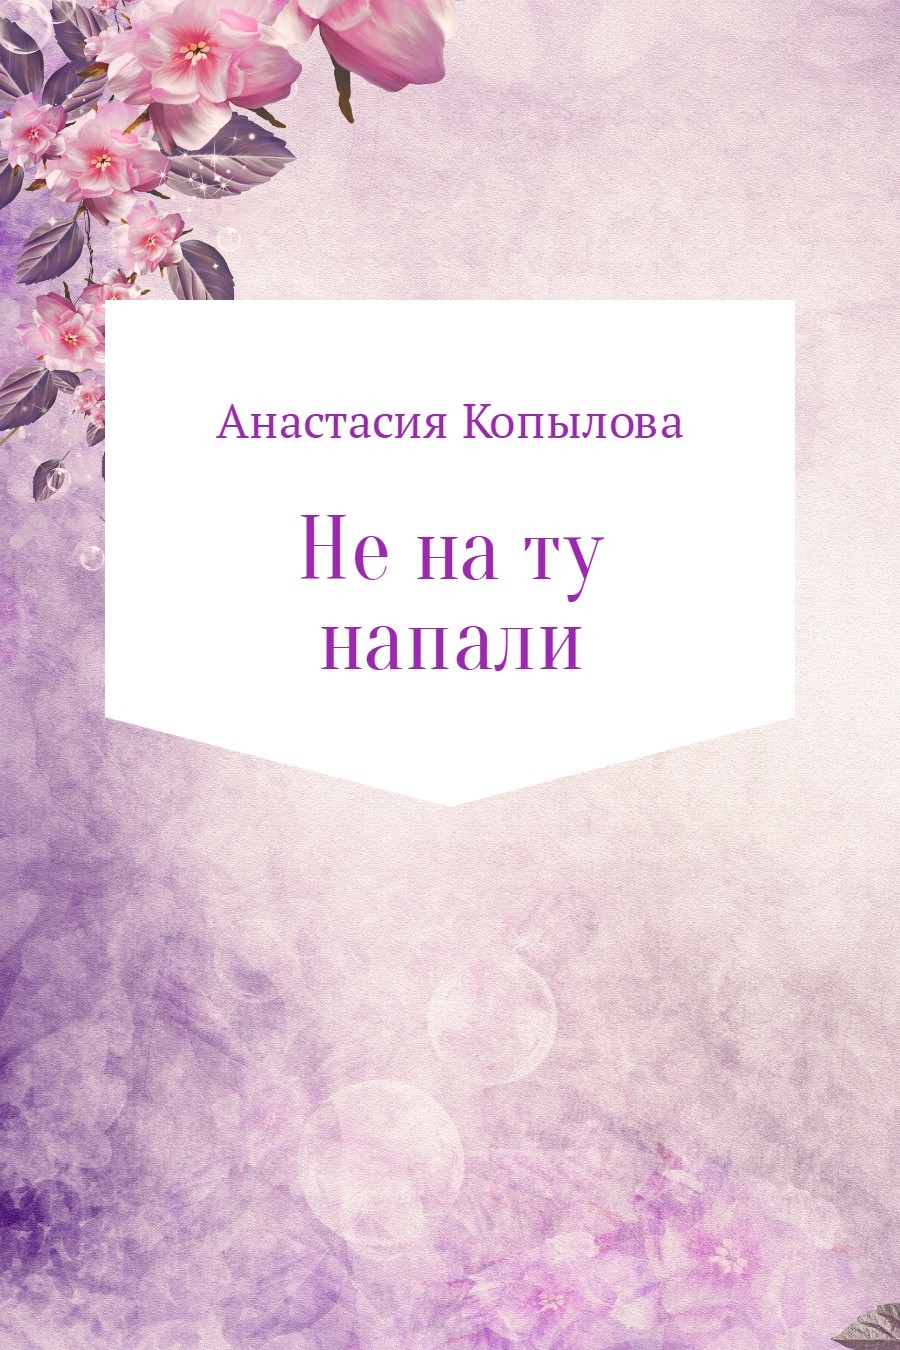 Анастасия Николаевна Копылова бесплатно